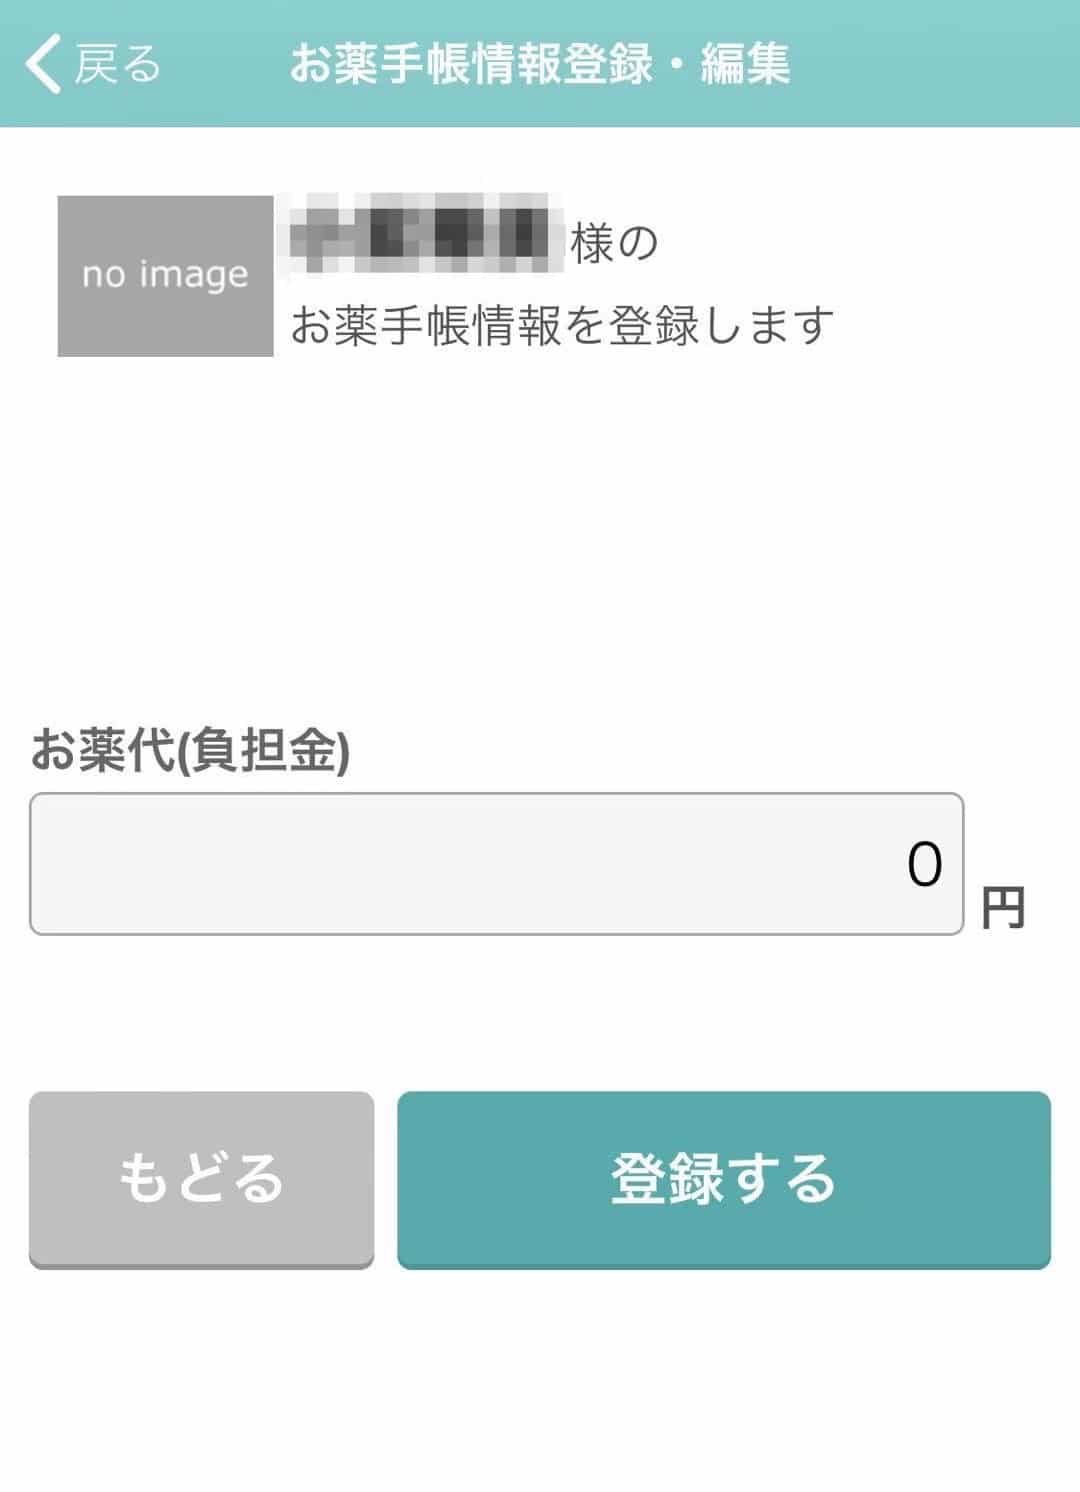 お薬手帳アプリ